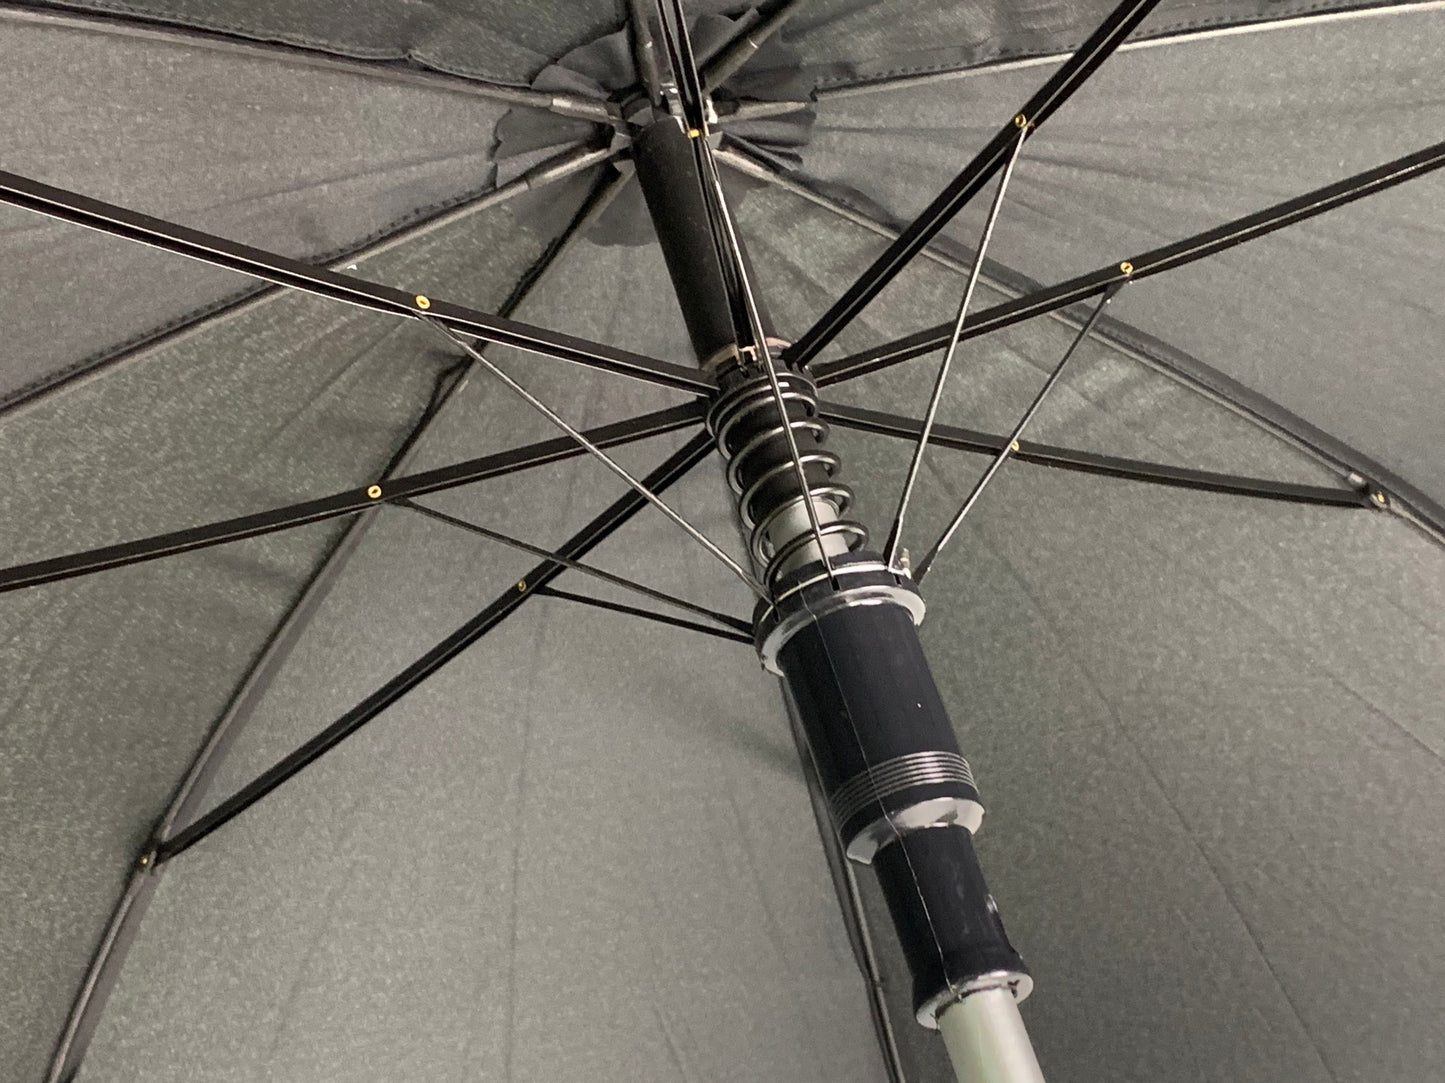 Μαύρη ομπρέλα βροχής, συνοδείας, μακριά, με ιστό αλουμινίου.